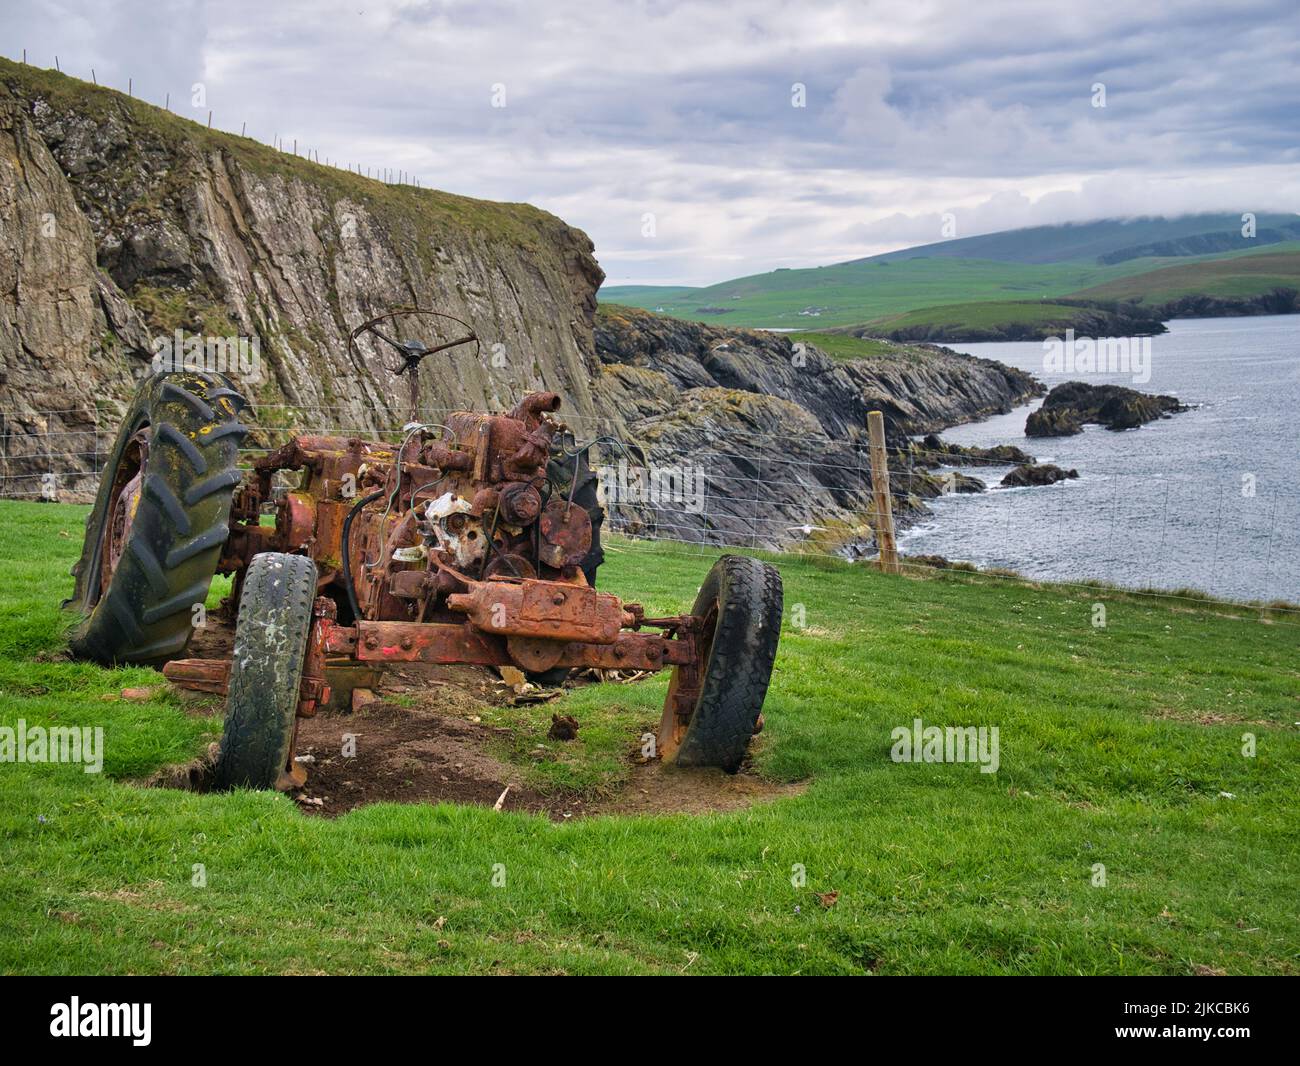 Los restos de un tractor oxidado abandonado en un campo cubierto de hierba en la costa cerca de Bigton, Shetland, Reino Unido. Tomado en un día nublado y nublado. Foto de stock